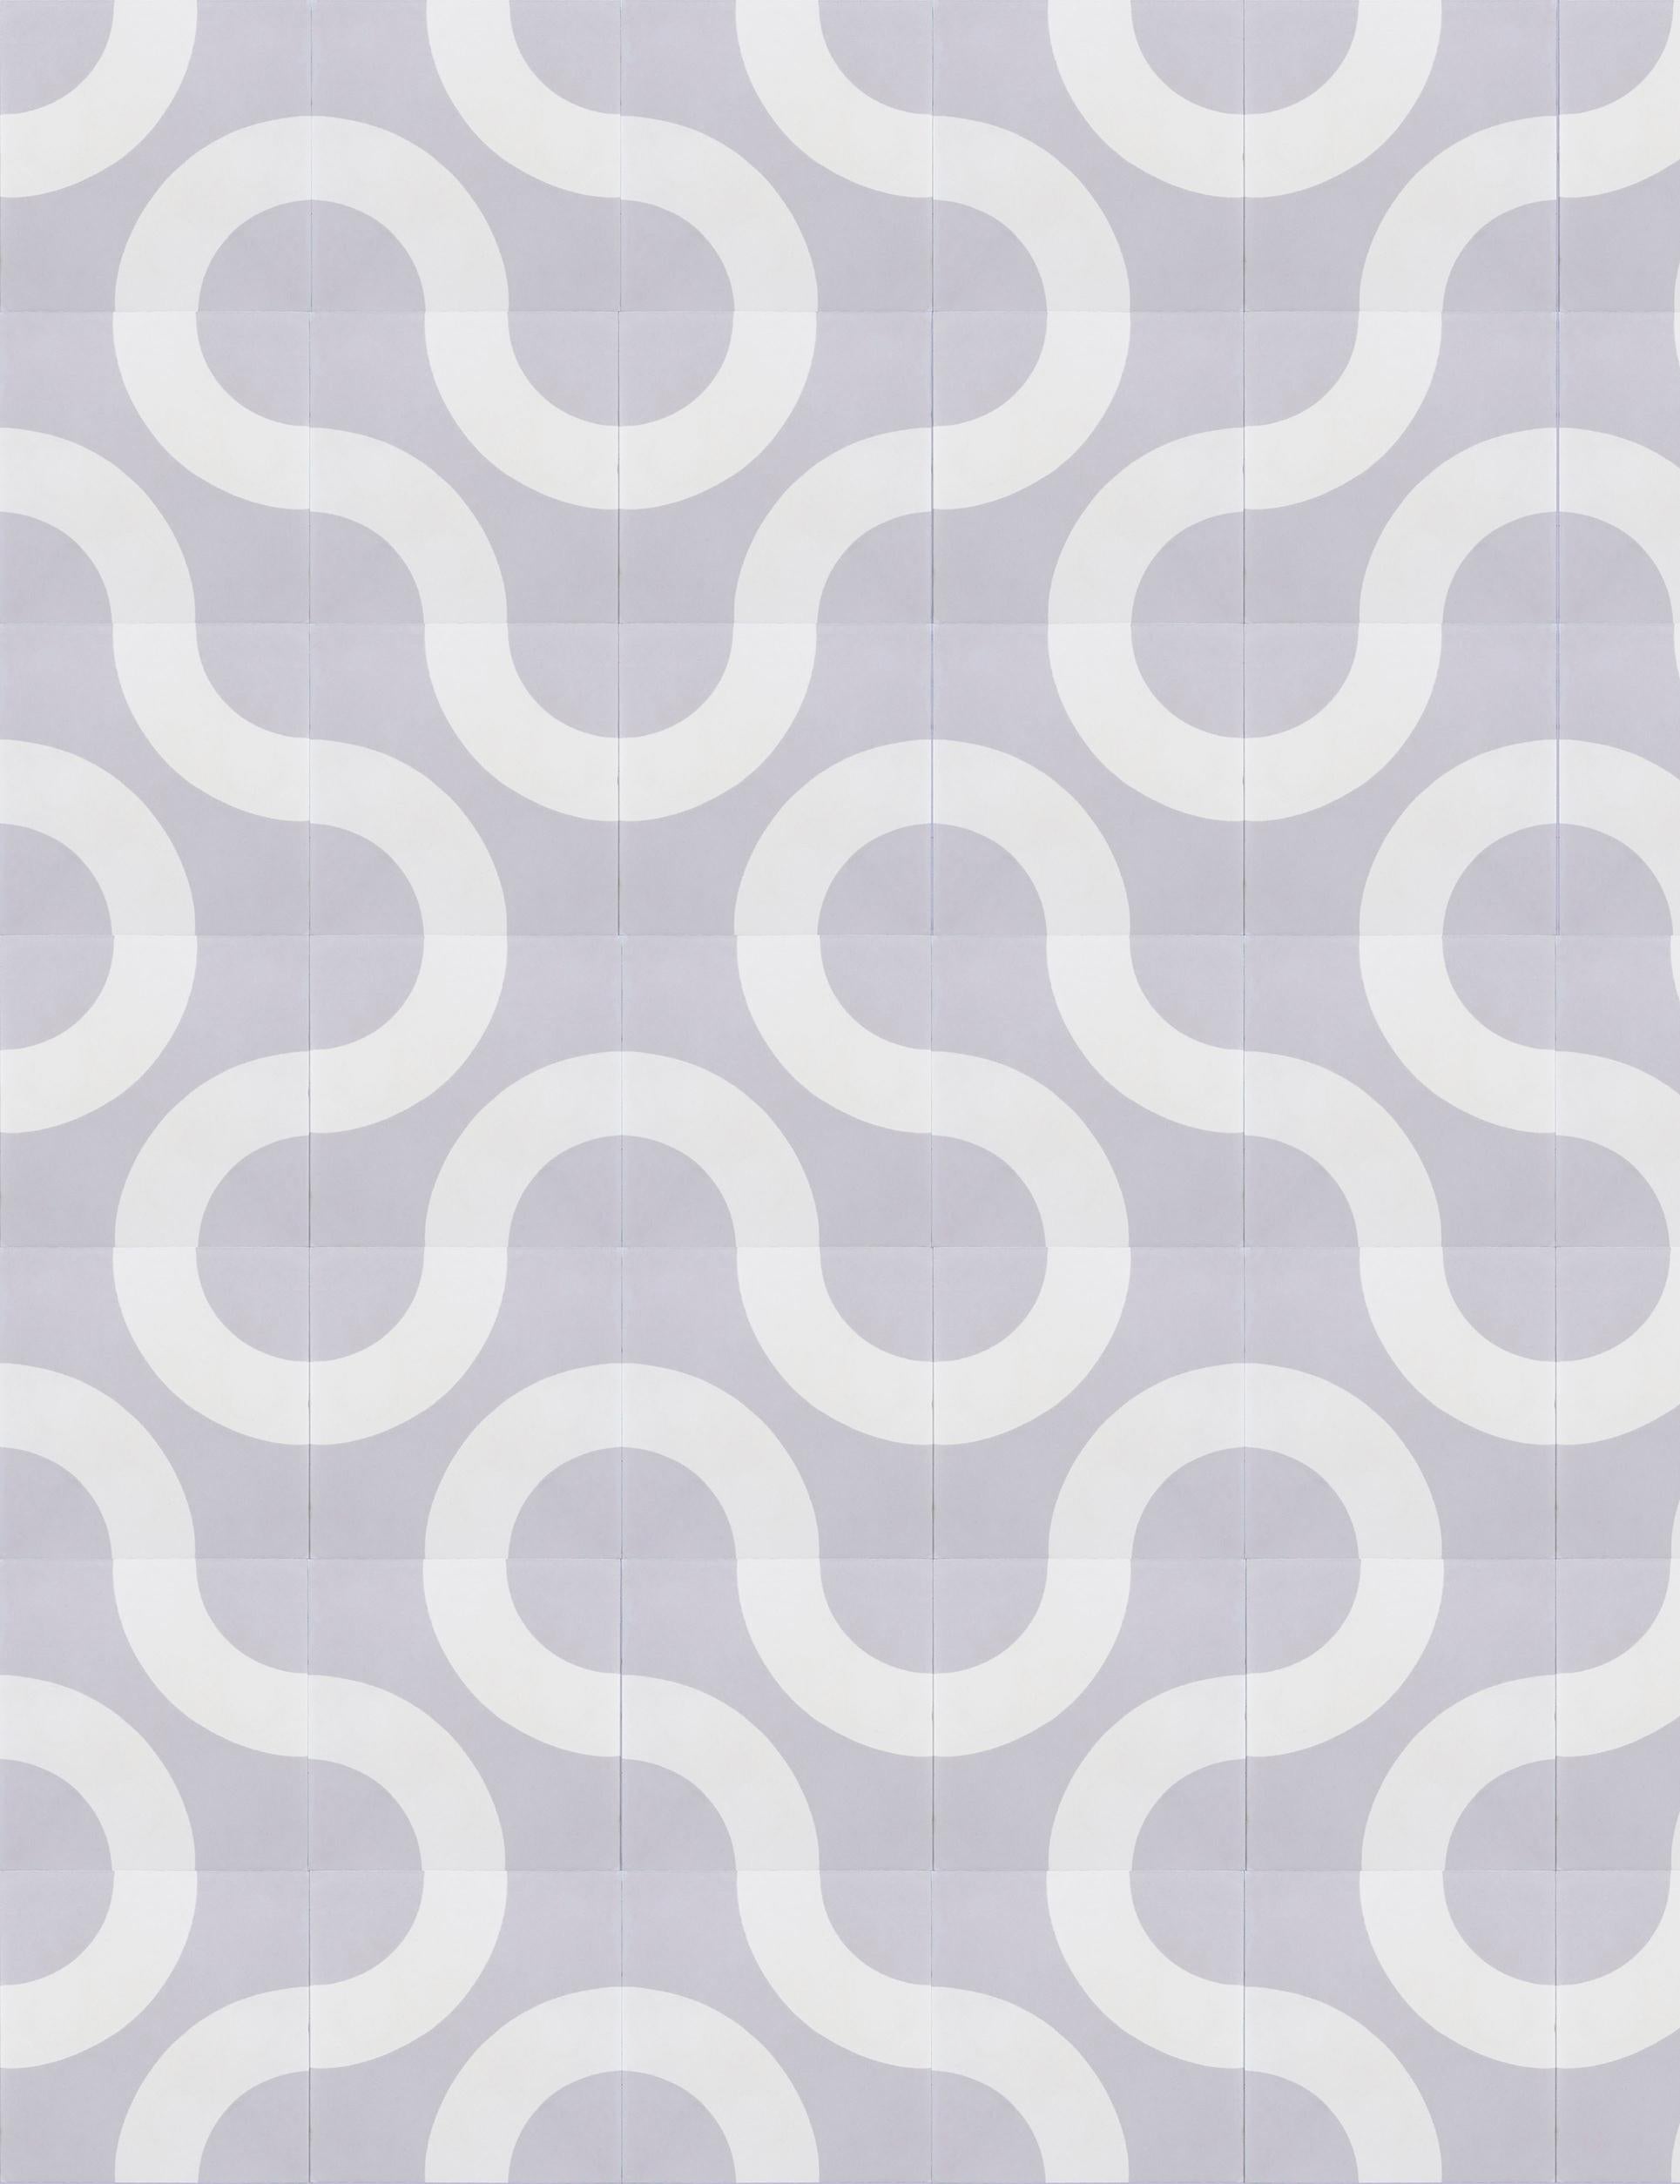 Diese gewölbte geometrische Form schafft ein weiches Labyrinth mit unendlichen Möglichkeiten.
Zementfliesen
Art: Enkaustische Zementfliese
Herstellungsverfahren: Hydraulisches Pressverfahren
Materialien: Weißzement, Steinmehl, Zusatzstoffe,